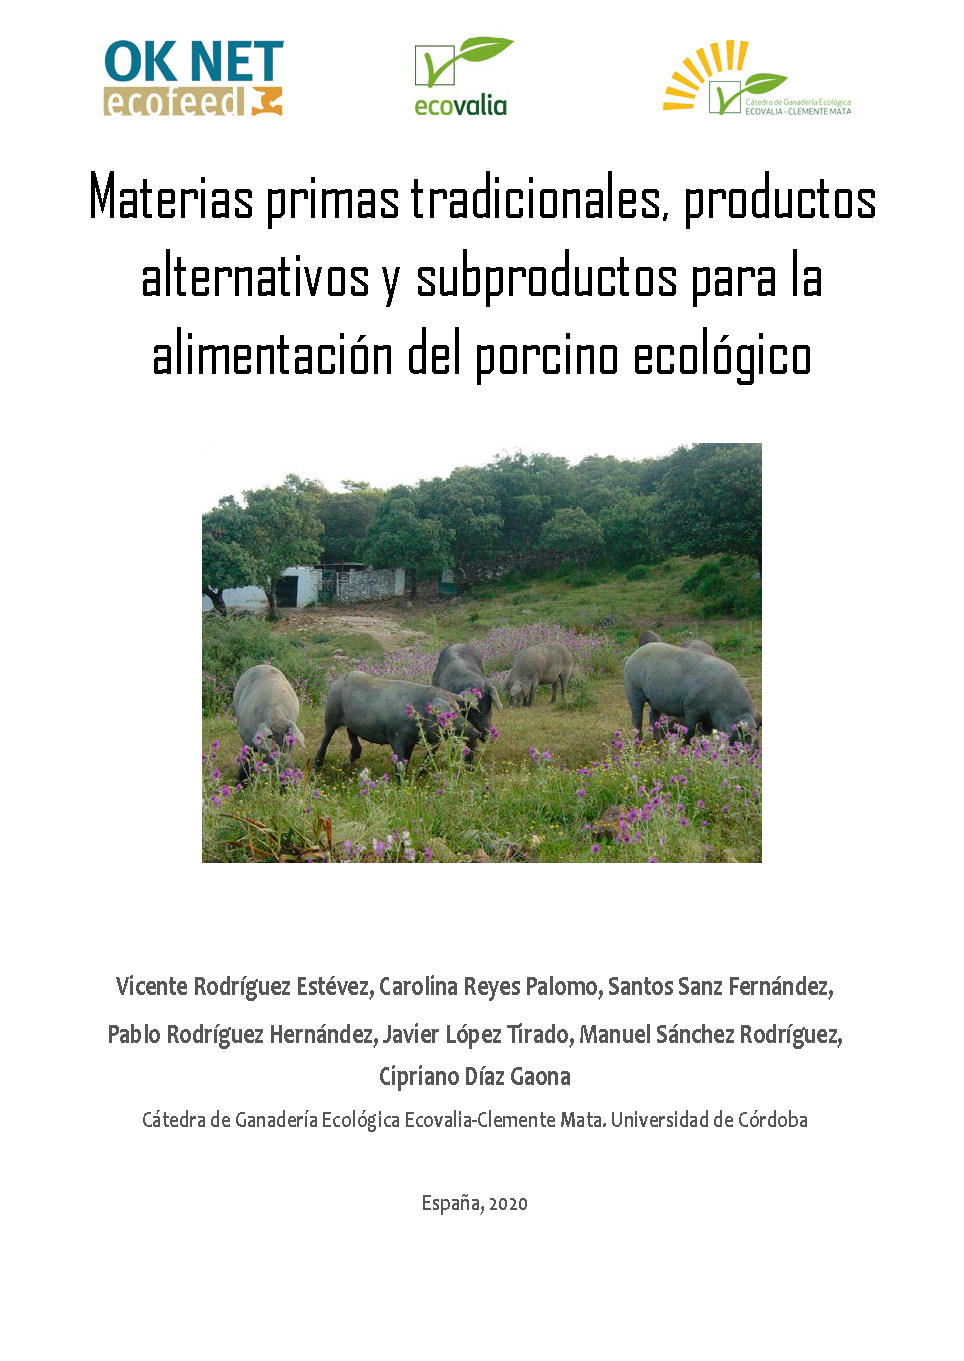 Traditionella råvaror, alternativa produkter och biprodukter för ekologisk utfodring av grisar